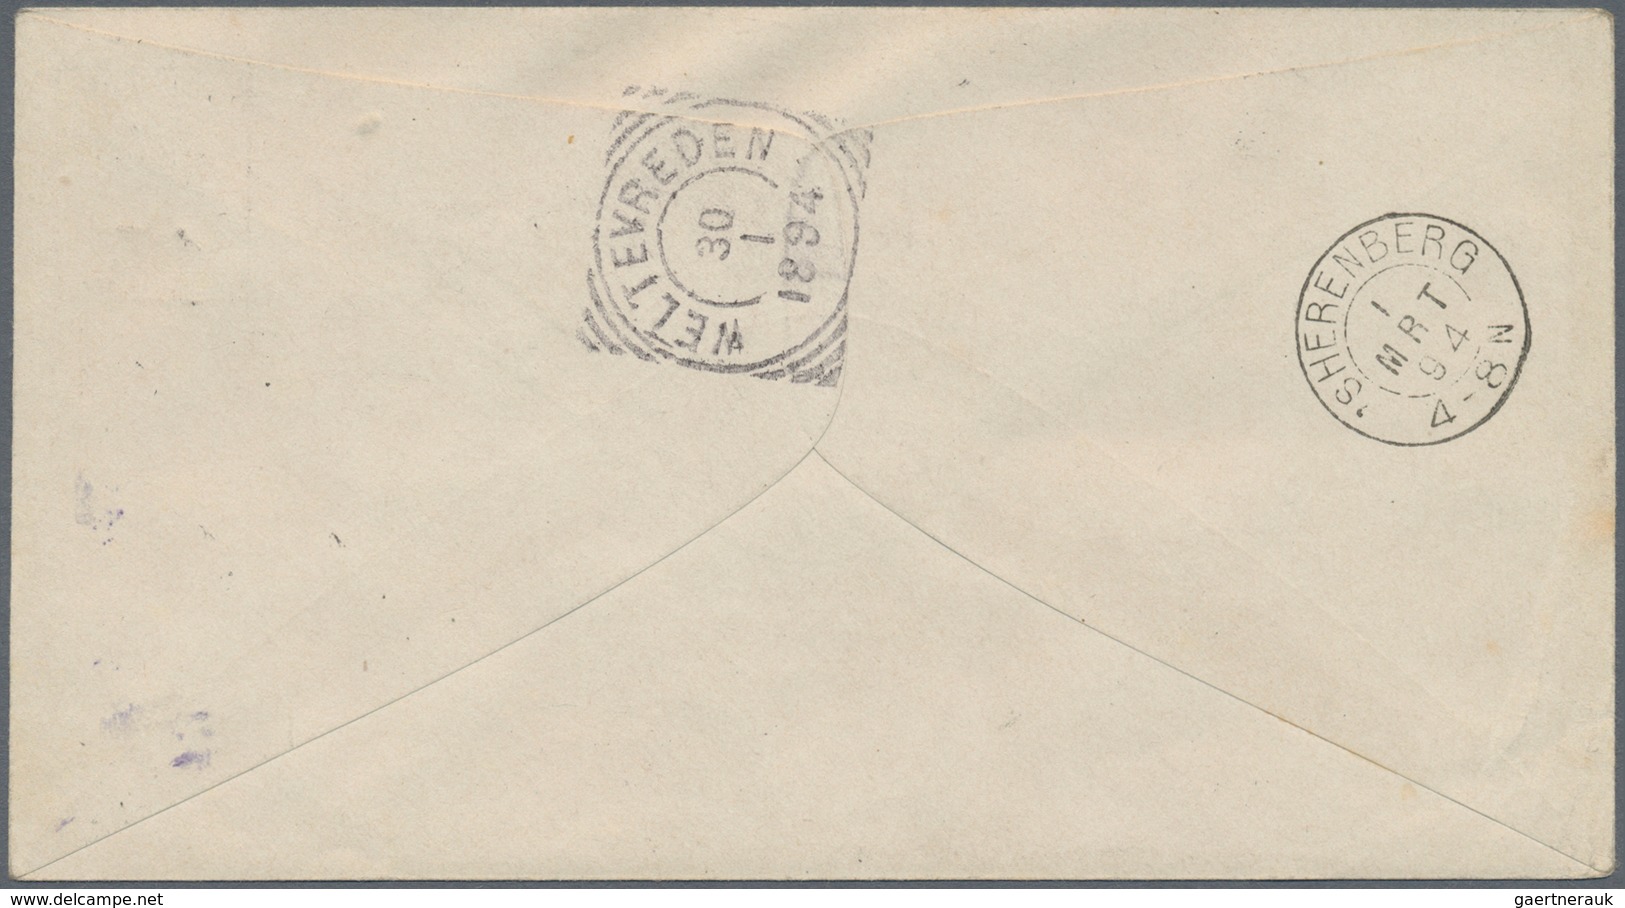 Niederländisch-Indien: 1894, Stationery Envelope 15 C./20 C. Violet Canc. "BUITENZORG 30 1 1894" Reg - Netherlands Indies